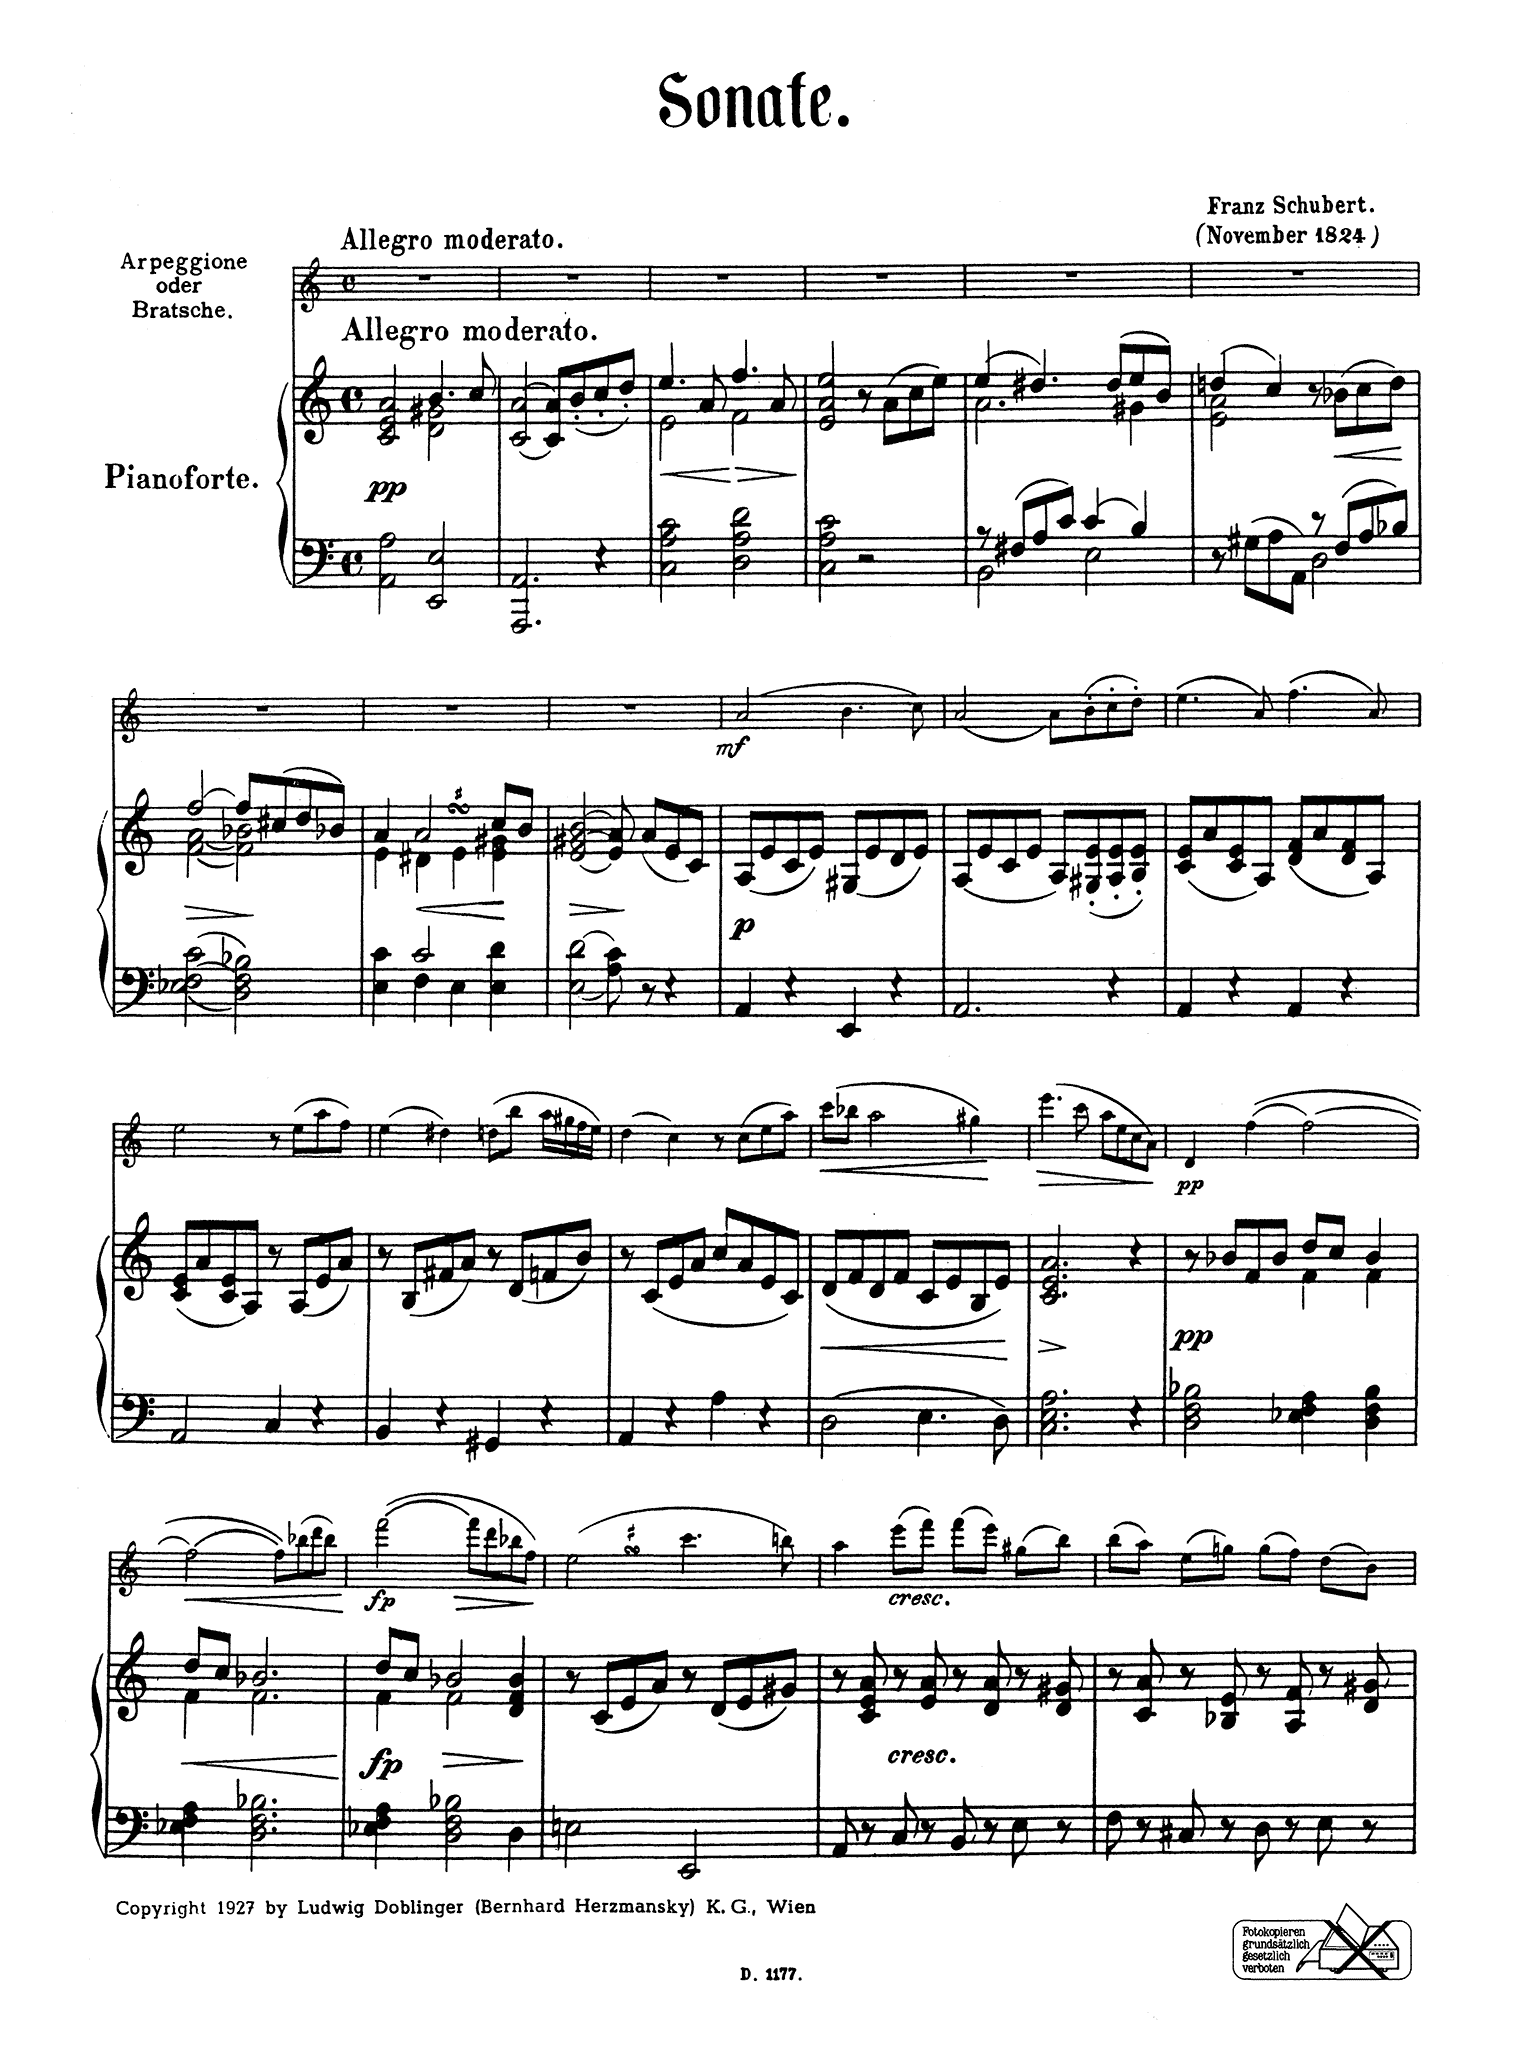 Schubert Sonata D. 821 ‘Arpeggione’ Basset clarinet - Movement 1